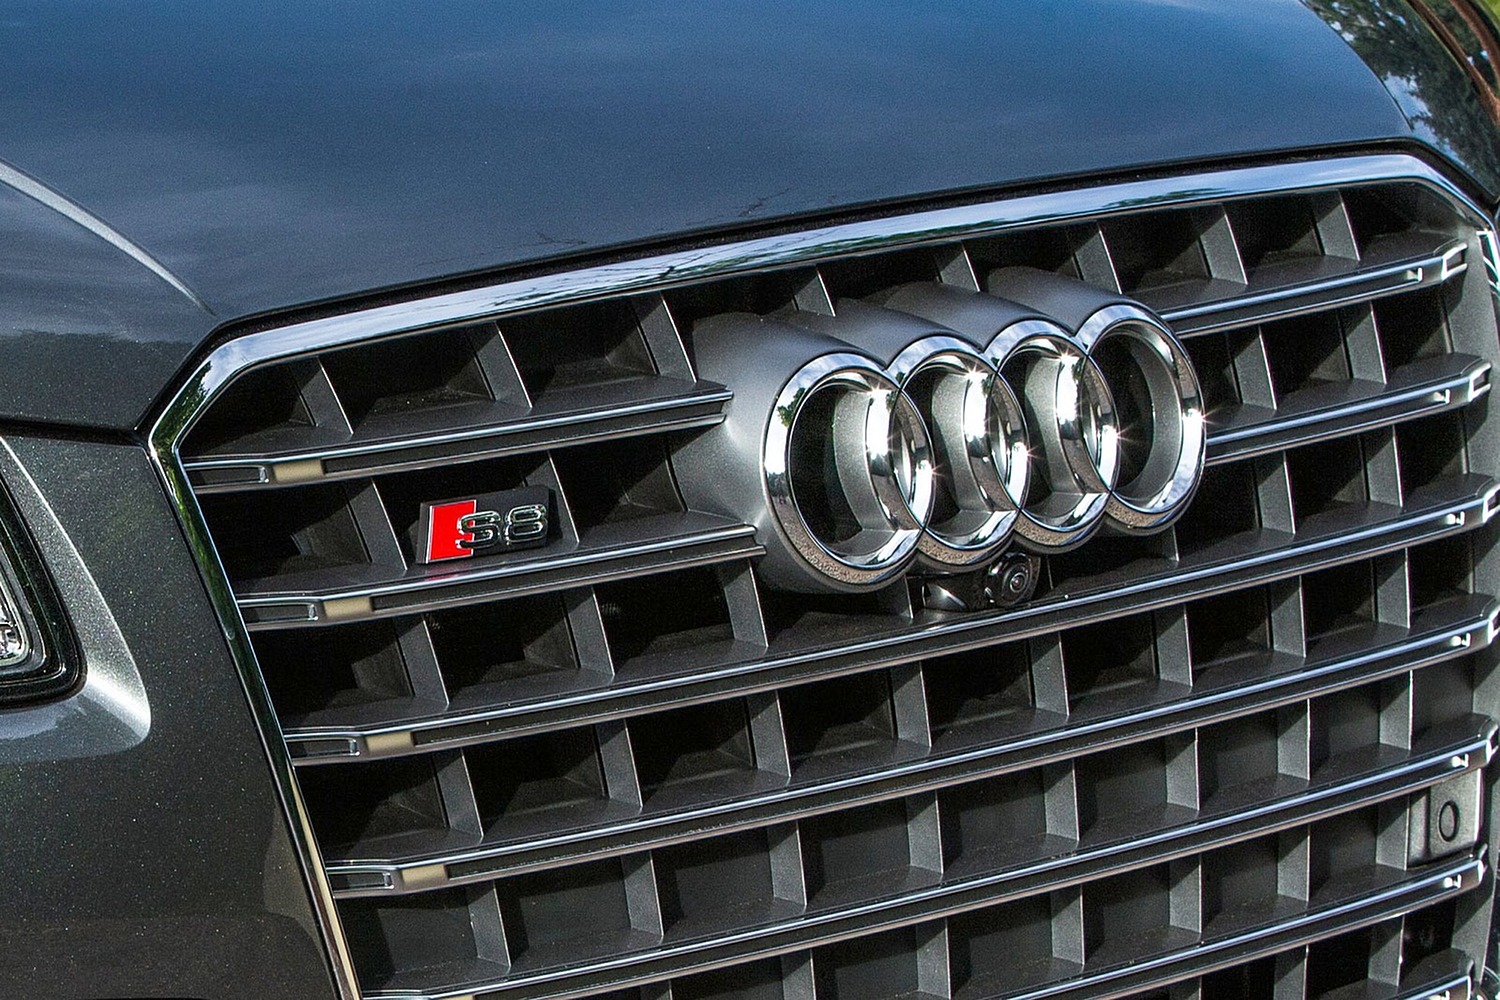 Audi S8 plus quattro Sedan Front Badge (2017 model year shown)